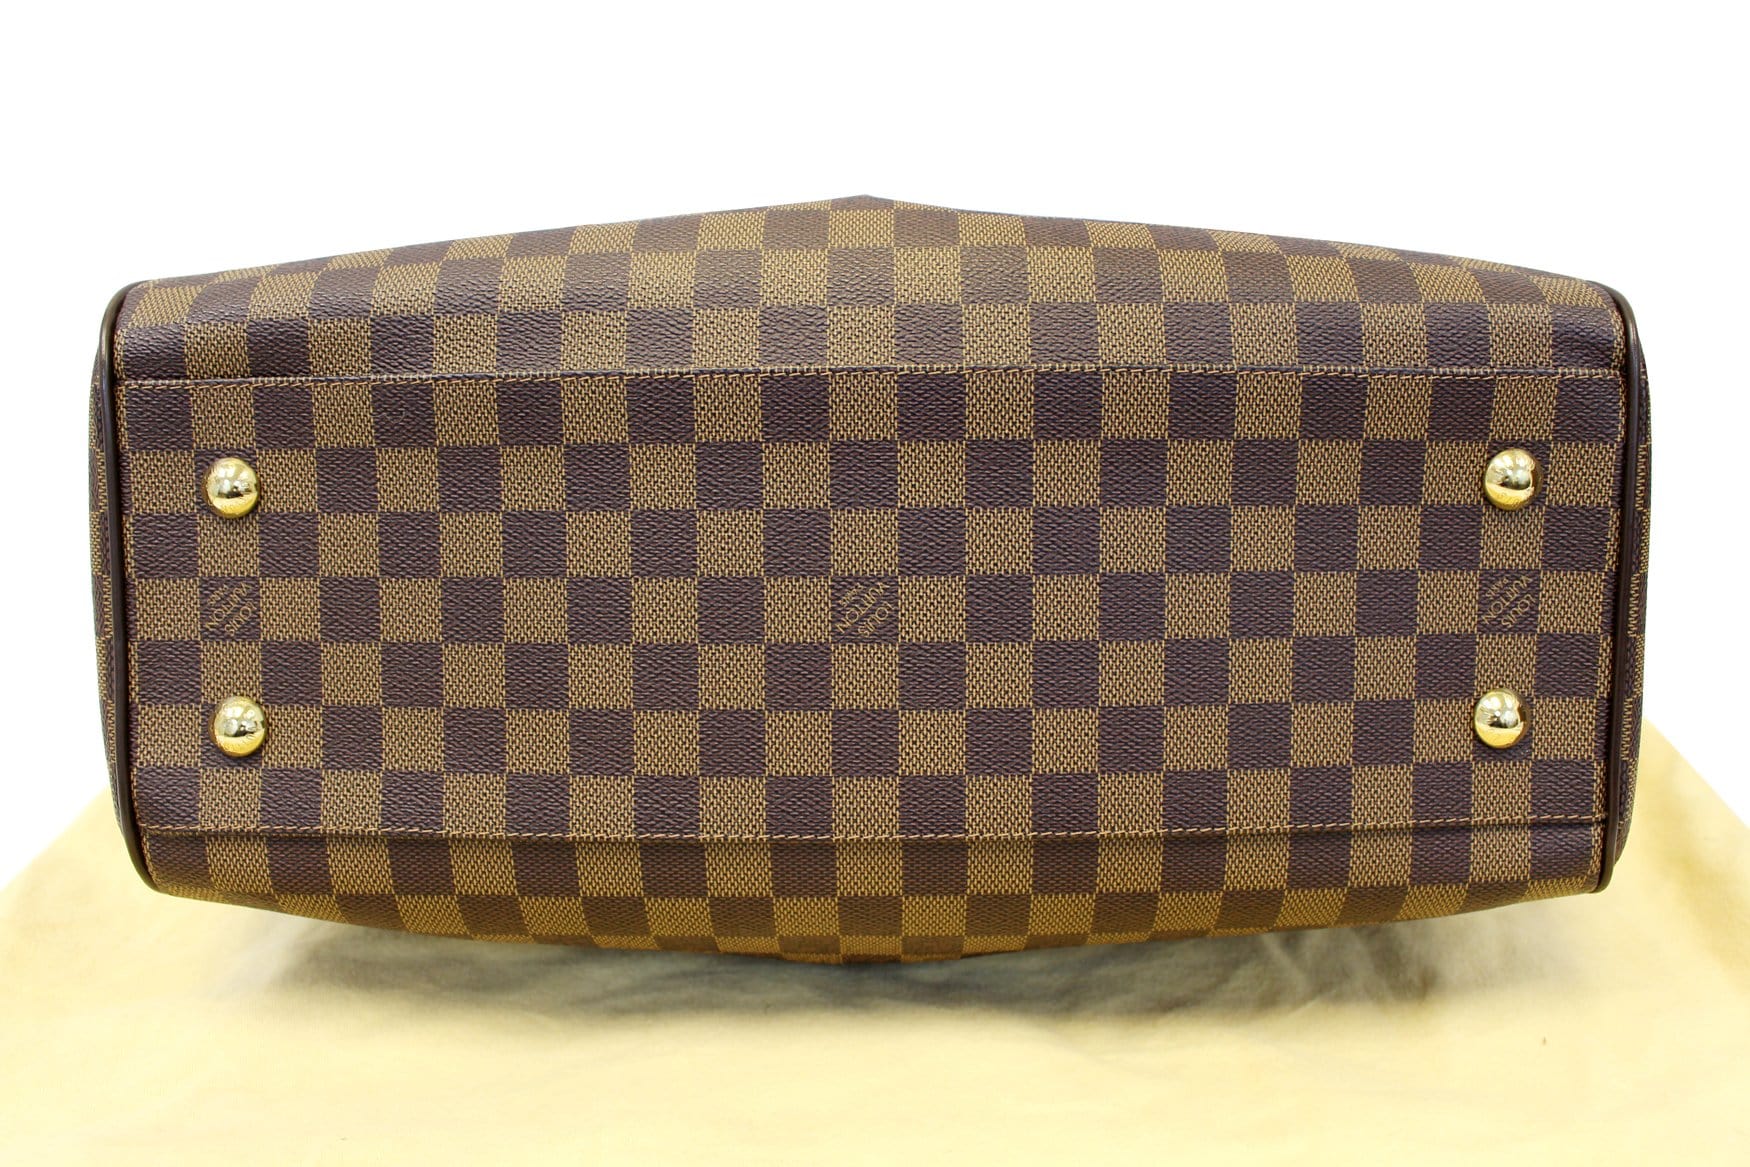 Louis Vuitton Pre-Loved Damier Ebene Trevi GM bag for Women